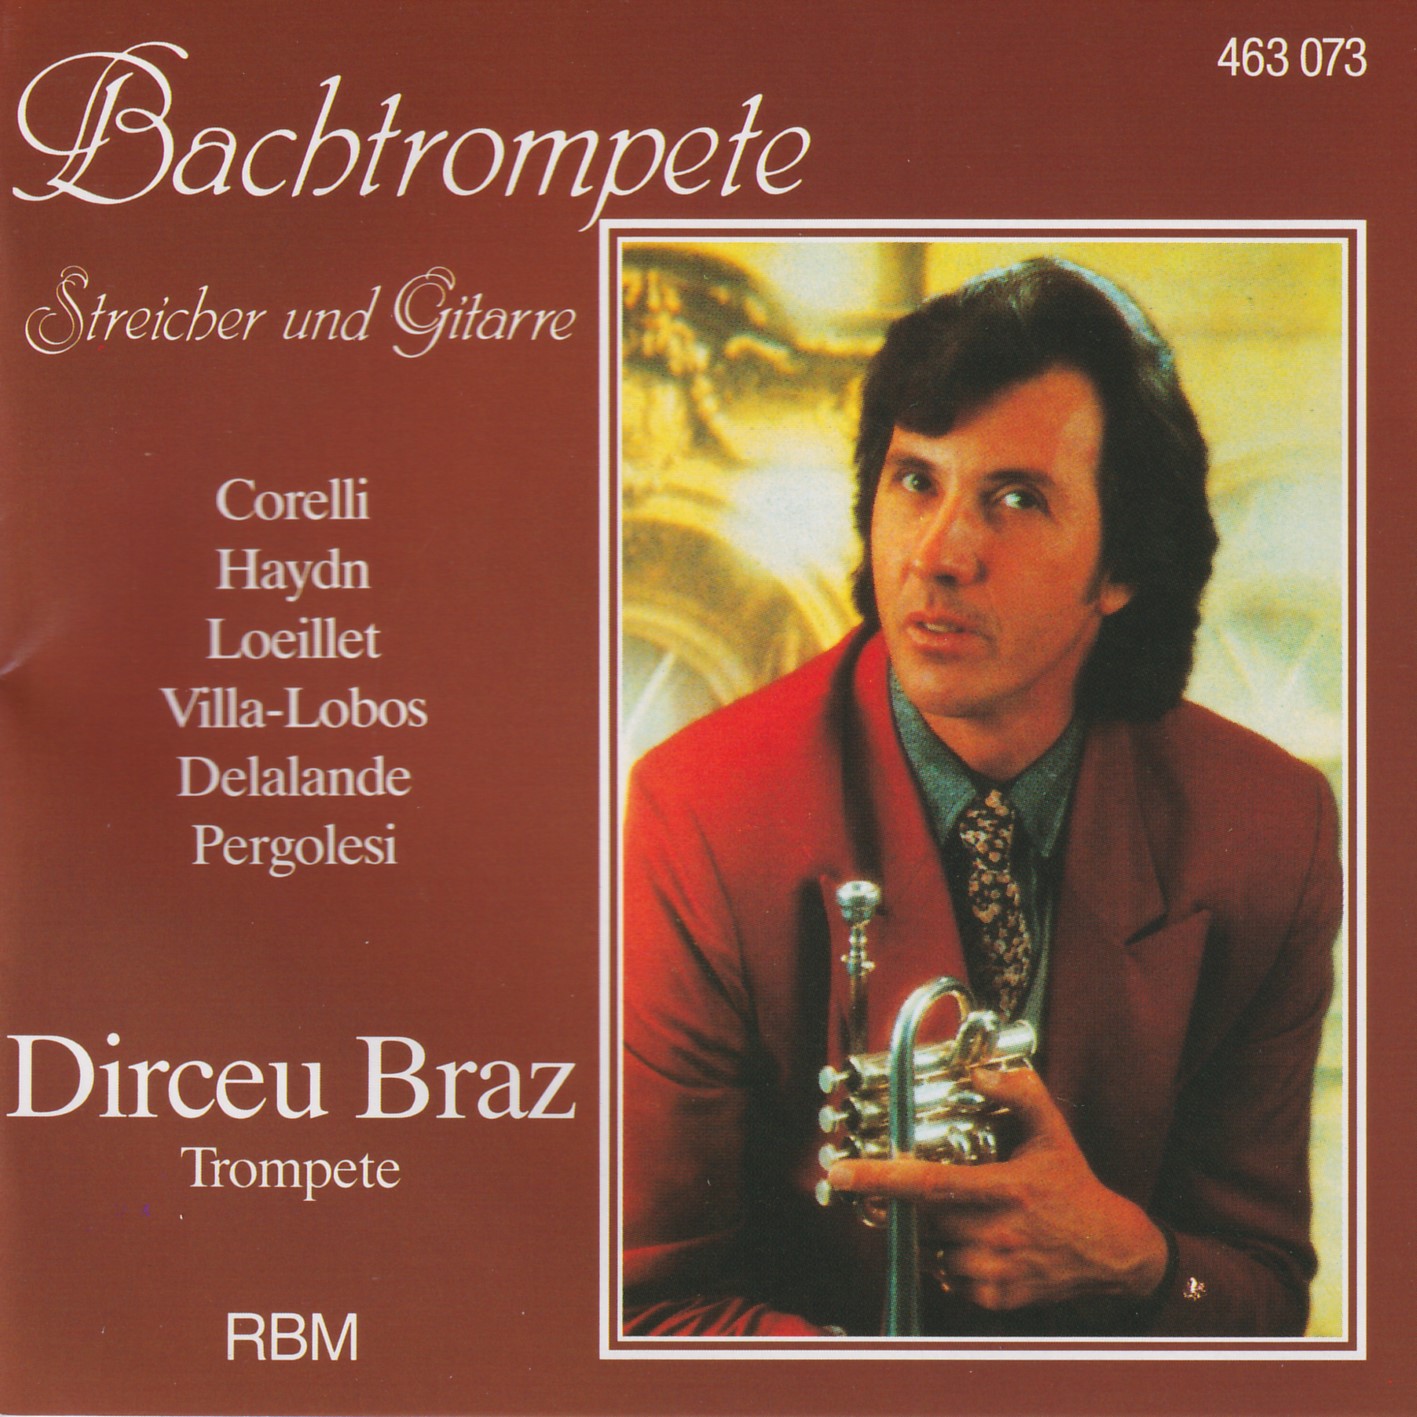 Bachtrompete, Streicher und Gitarre - Dirceu Braz